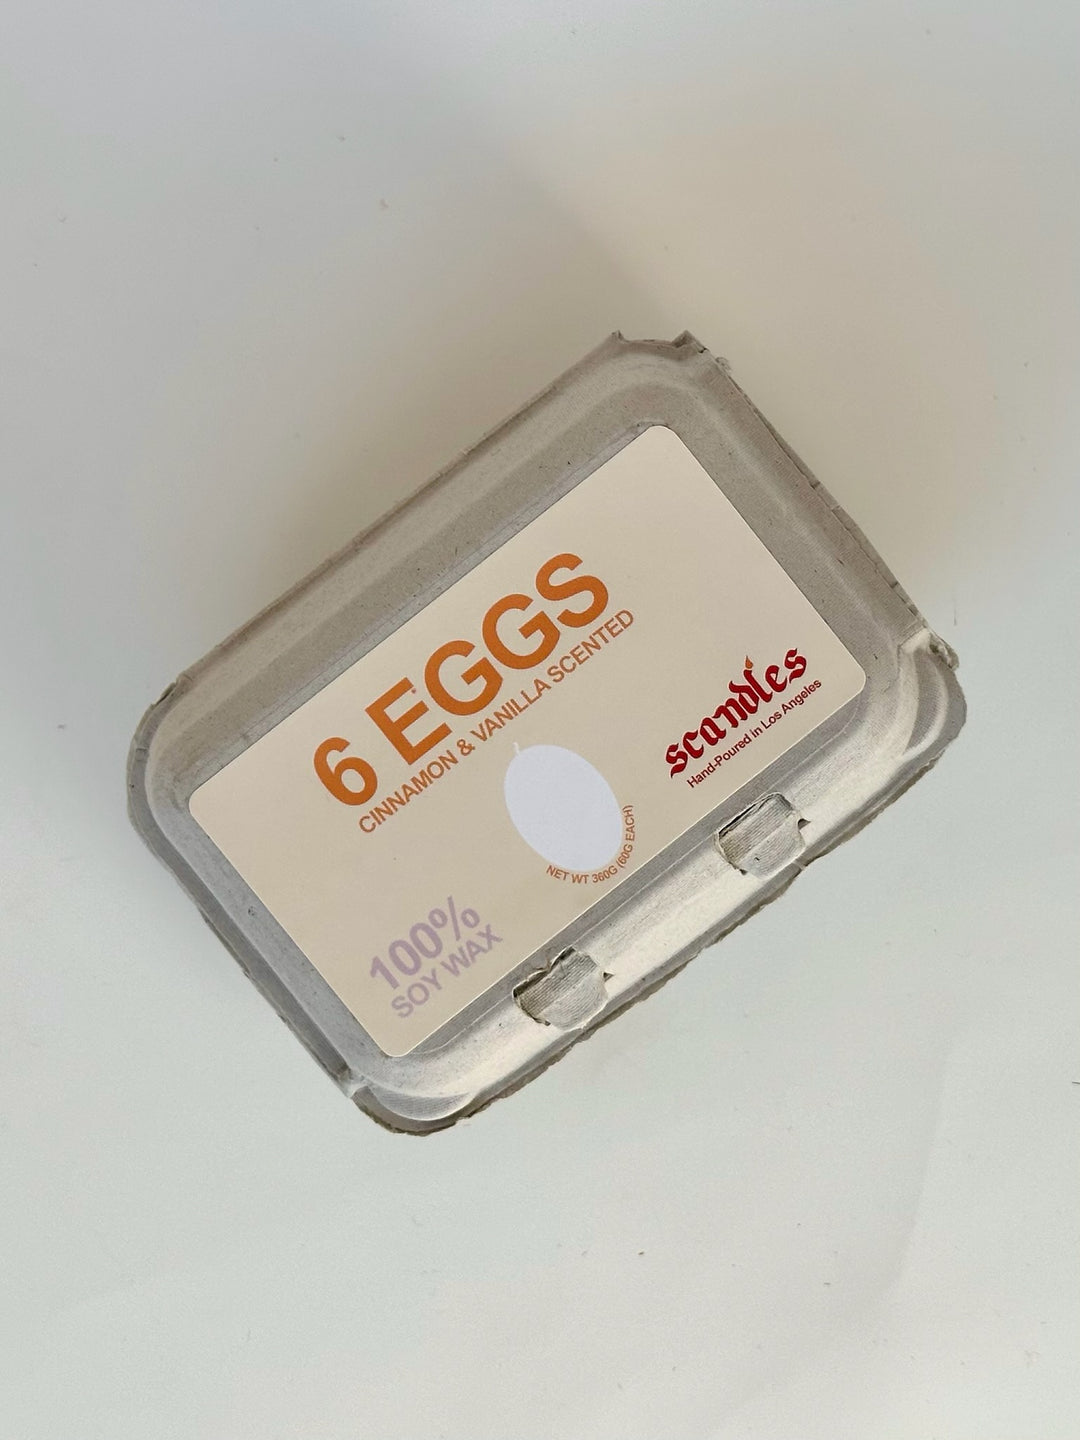 Egg Candles (Six pack box)